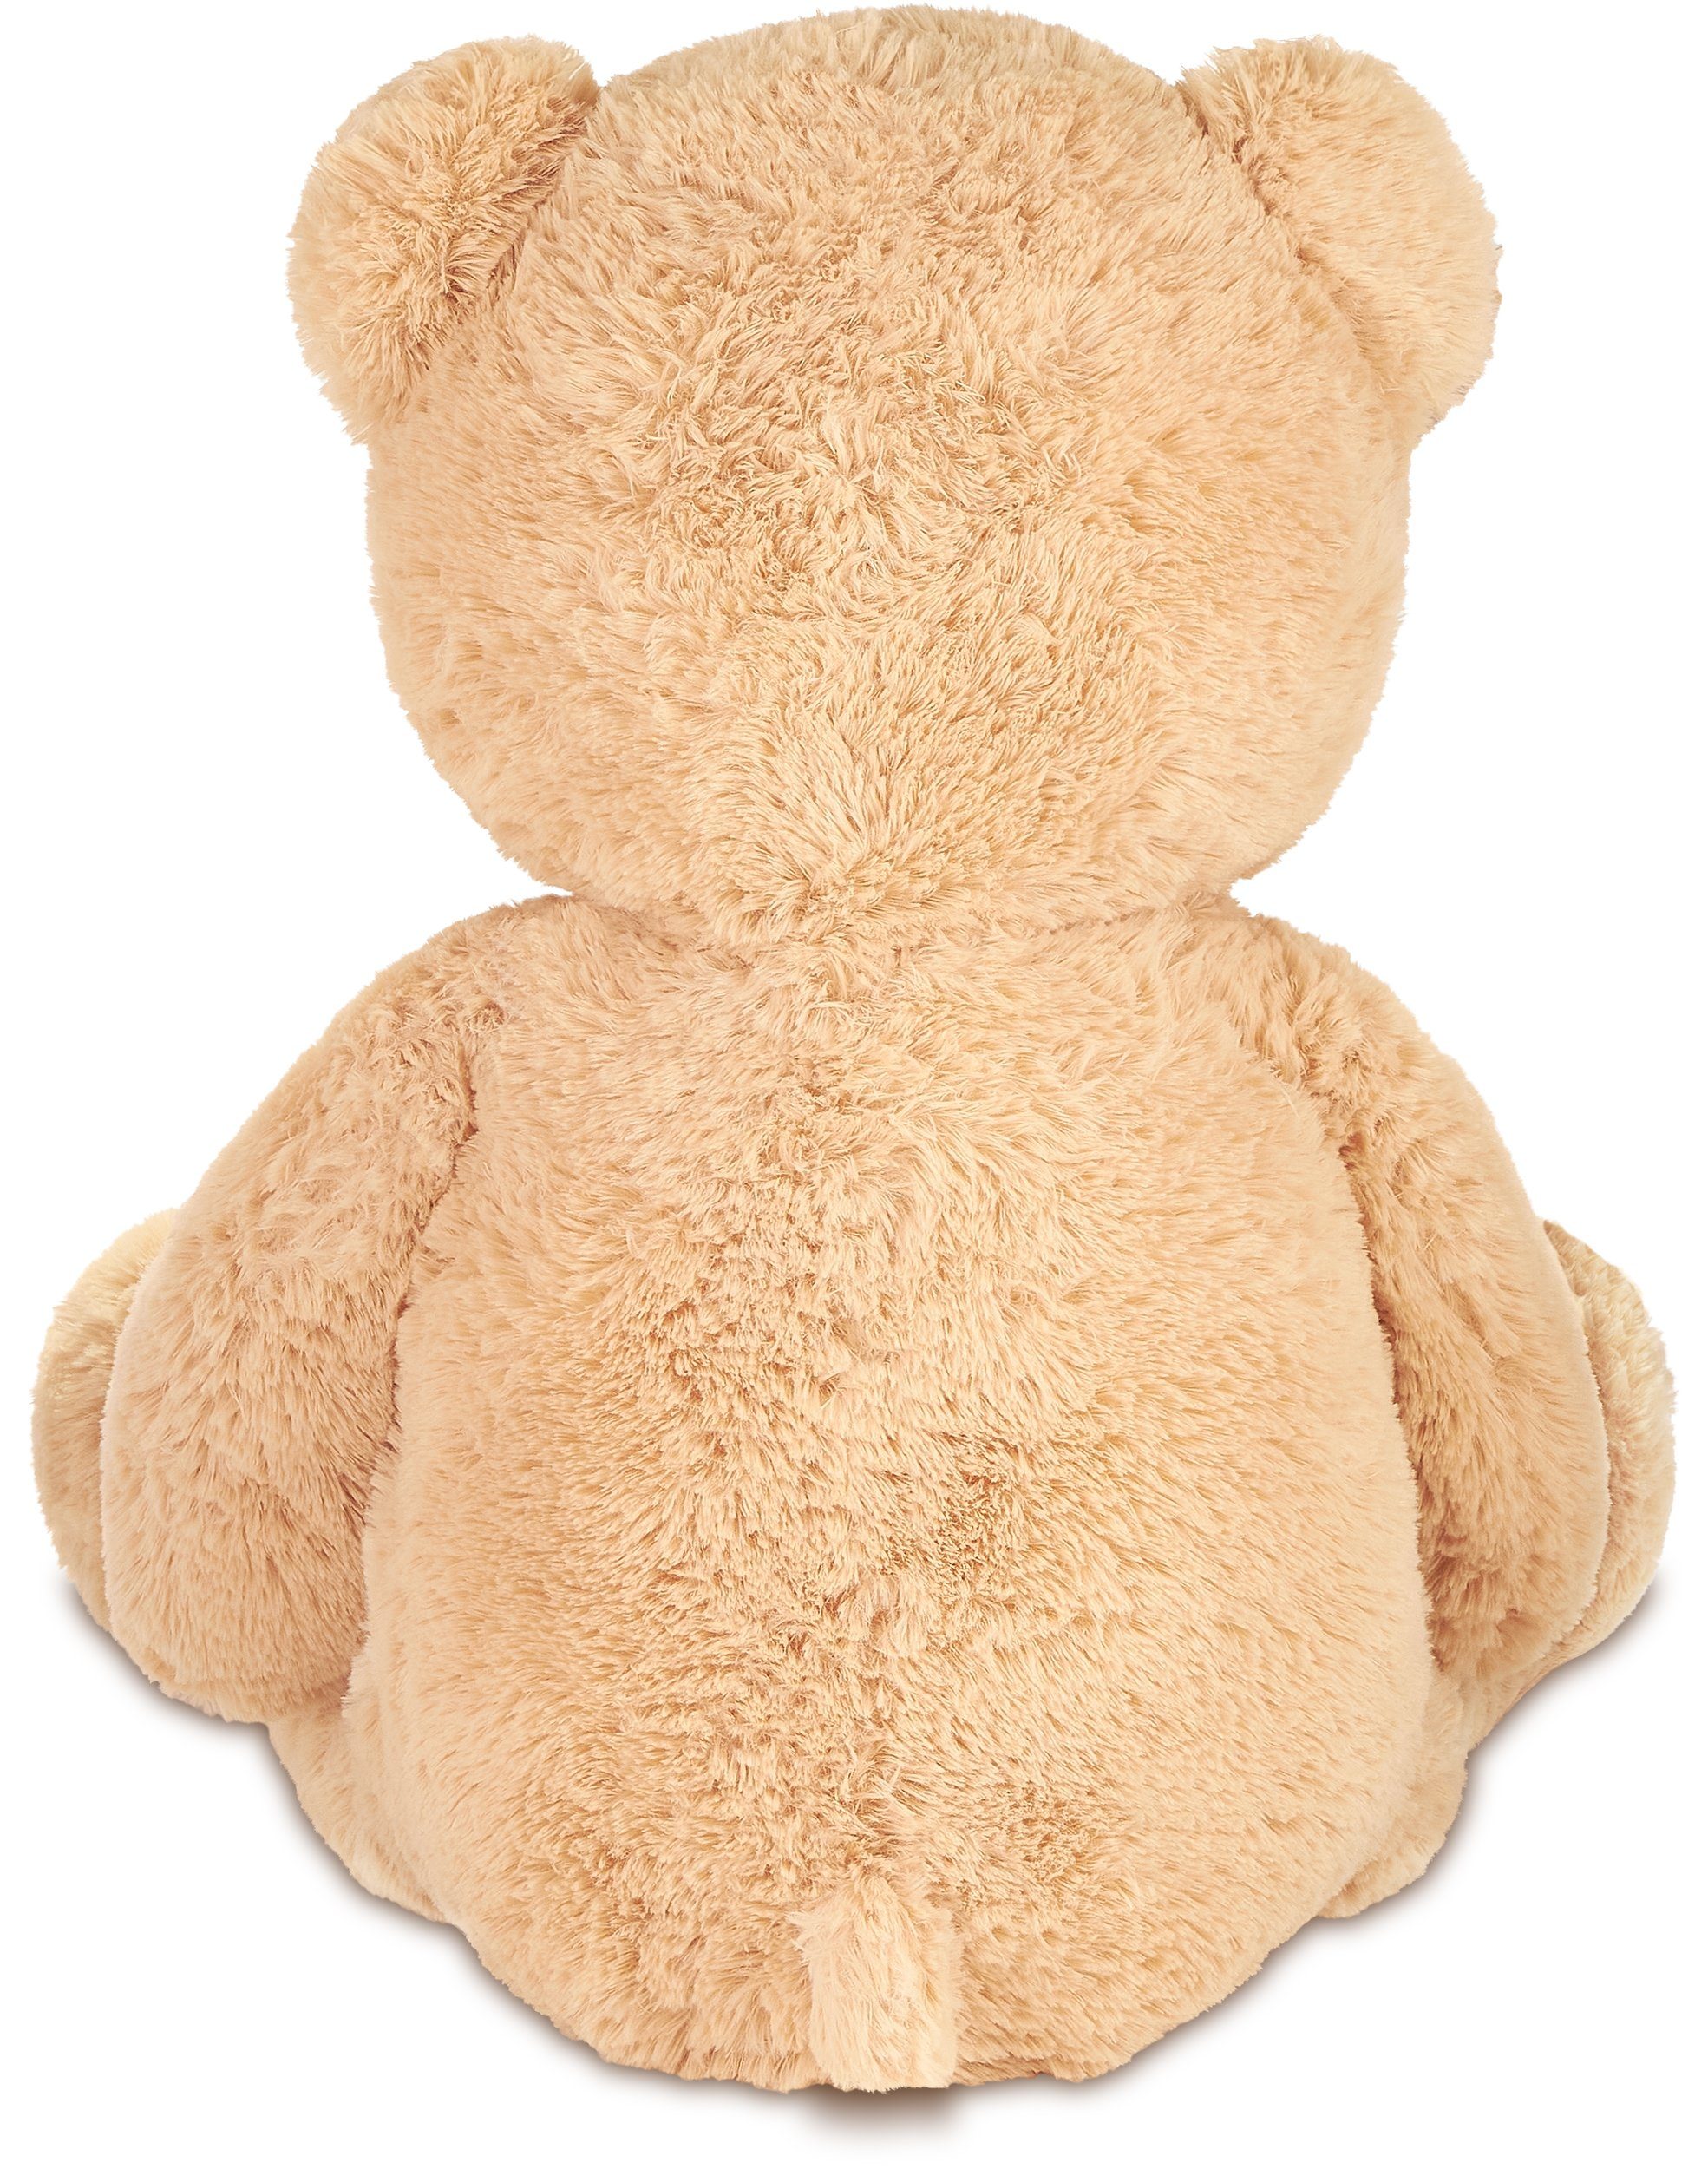 XXL Teddybär Bär 1m Riesen groß Kuscheltier 100 cm Teddy Plüschtier Braun 